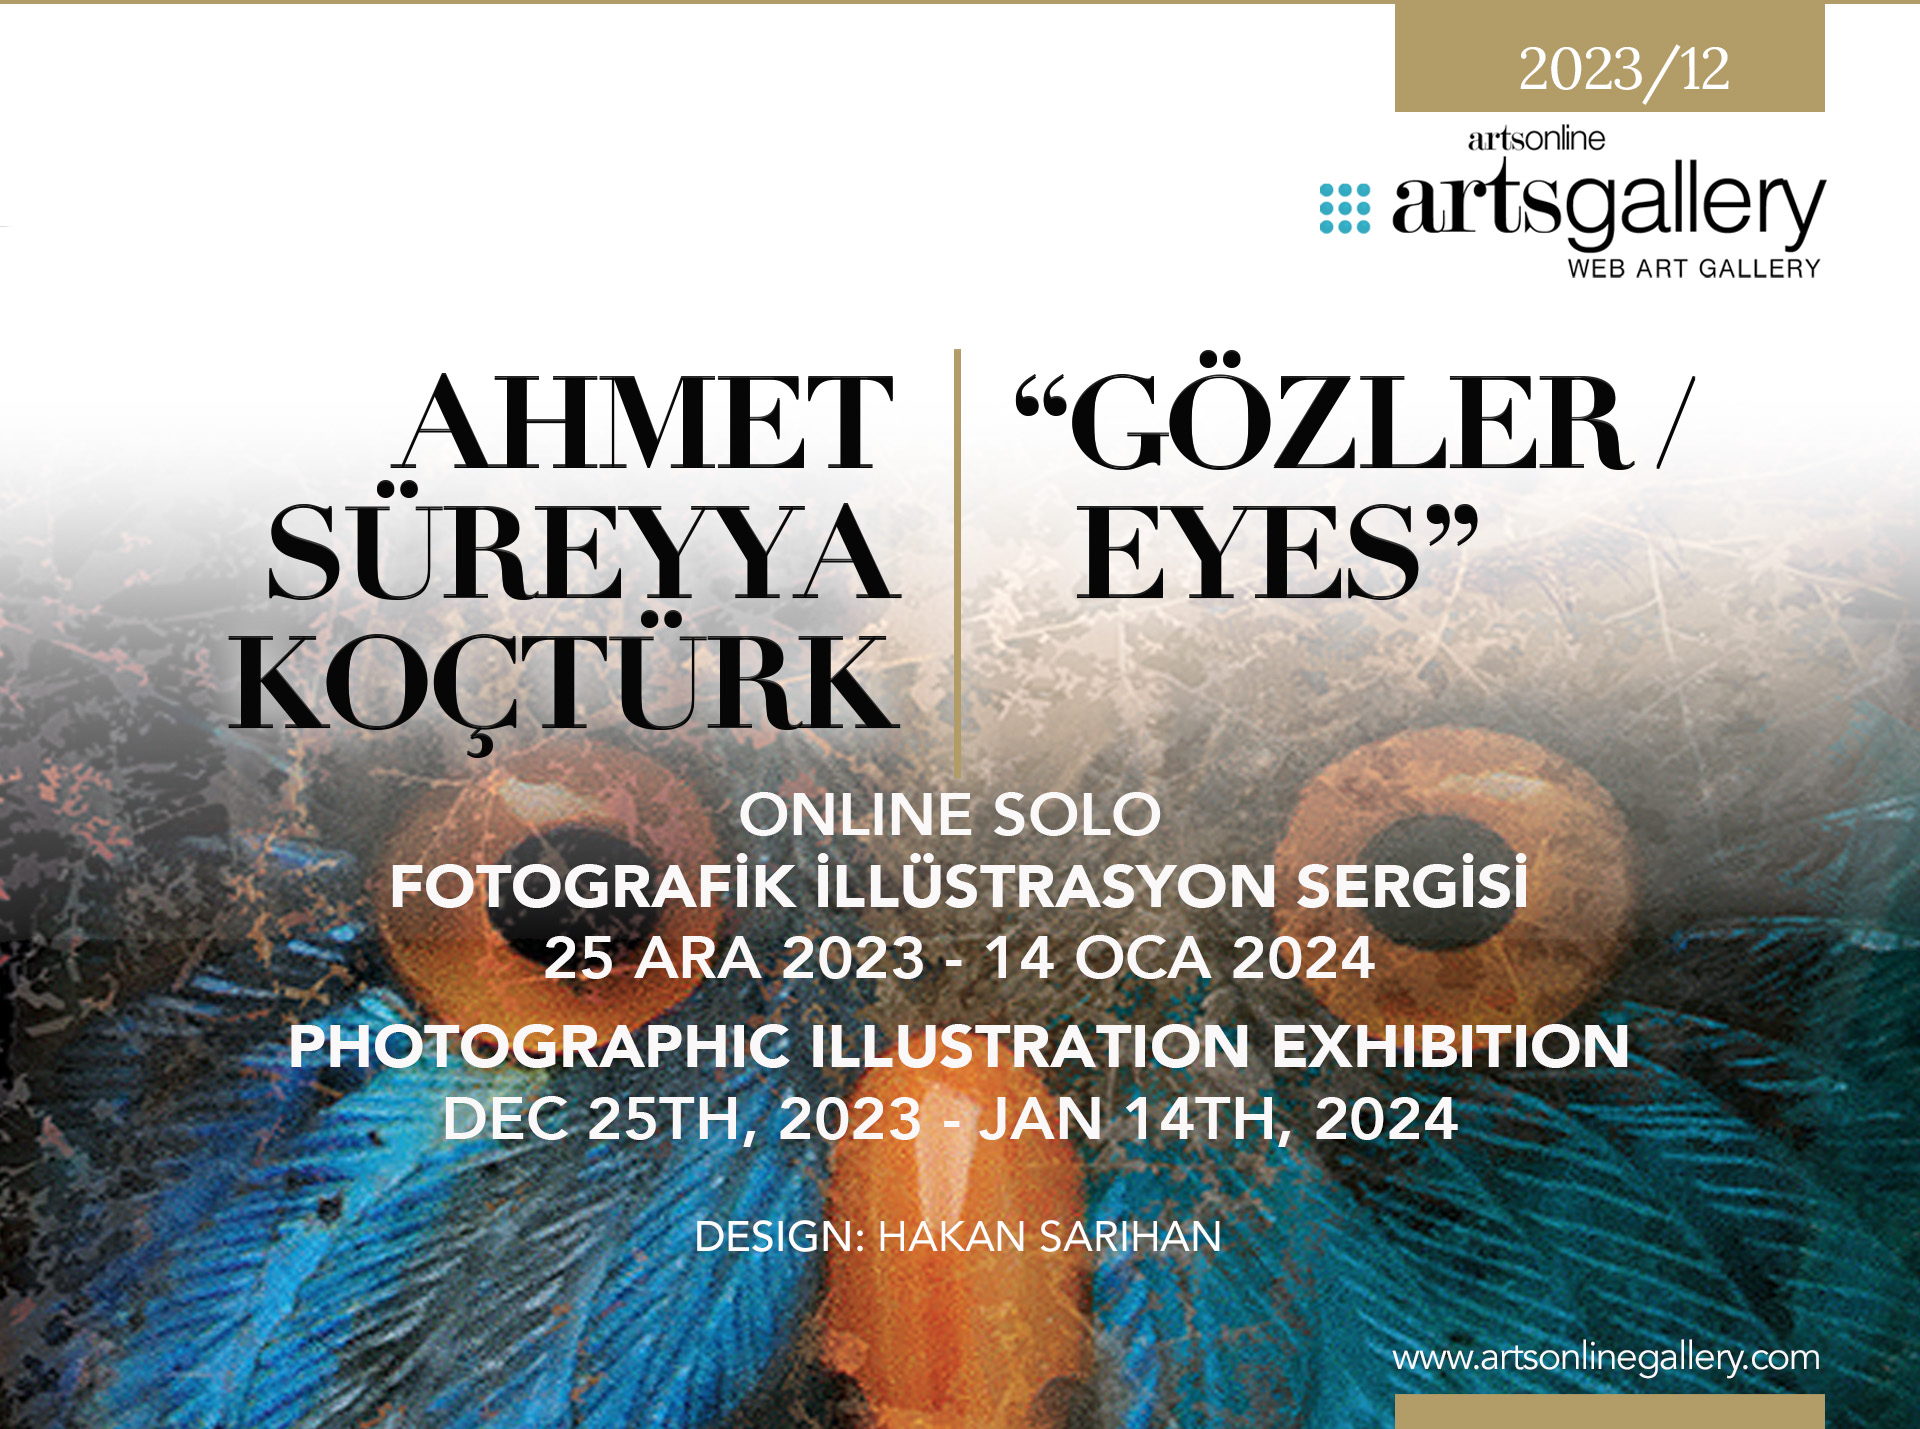 Ahmet Süreyya Koçtürk “Gözler / Eyes” Fotografik İllüstrasyon Sergisi